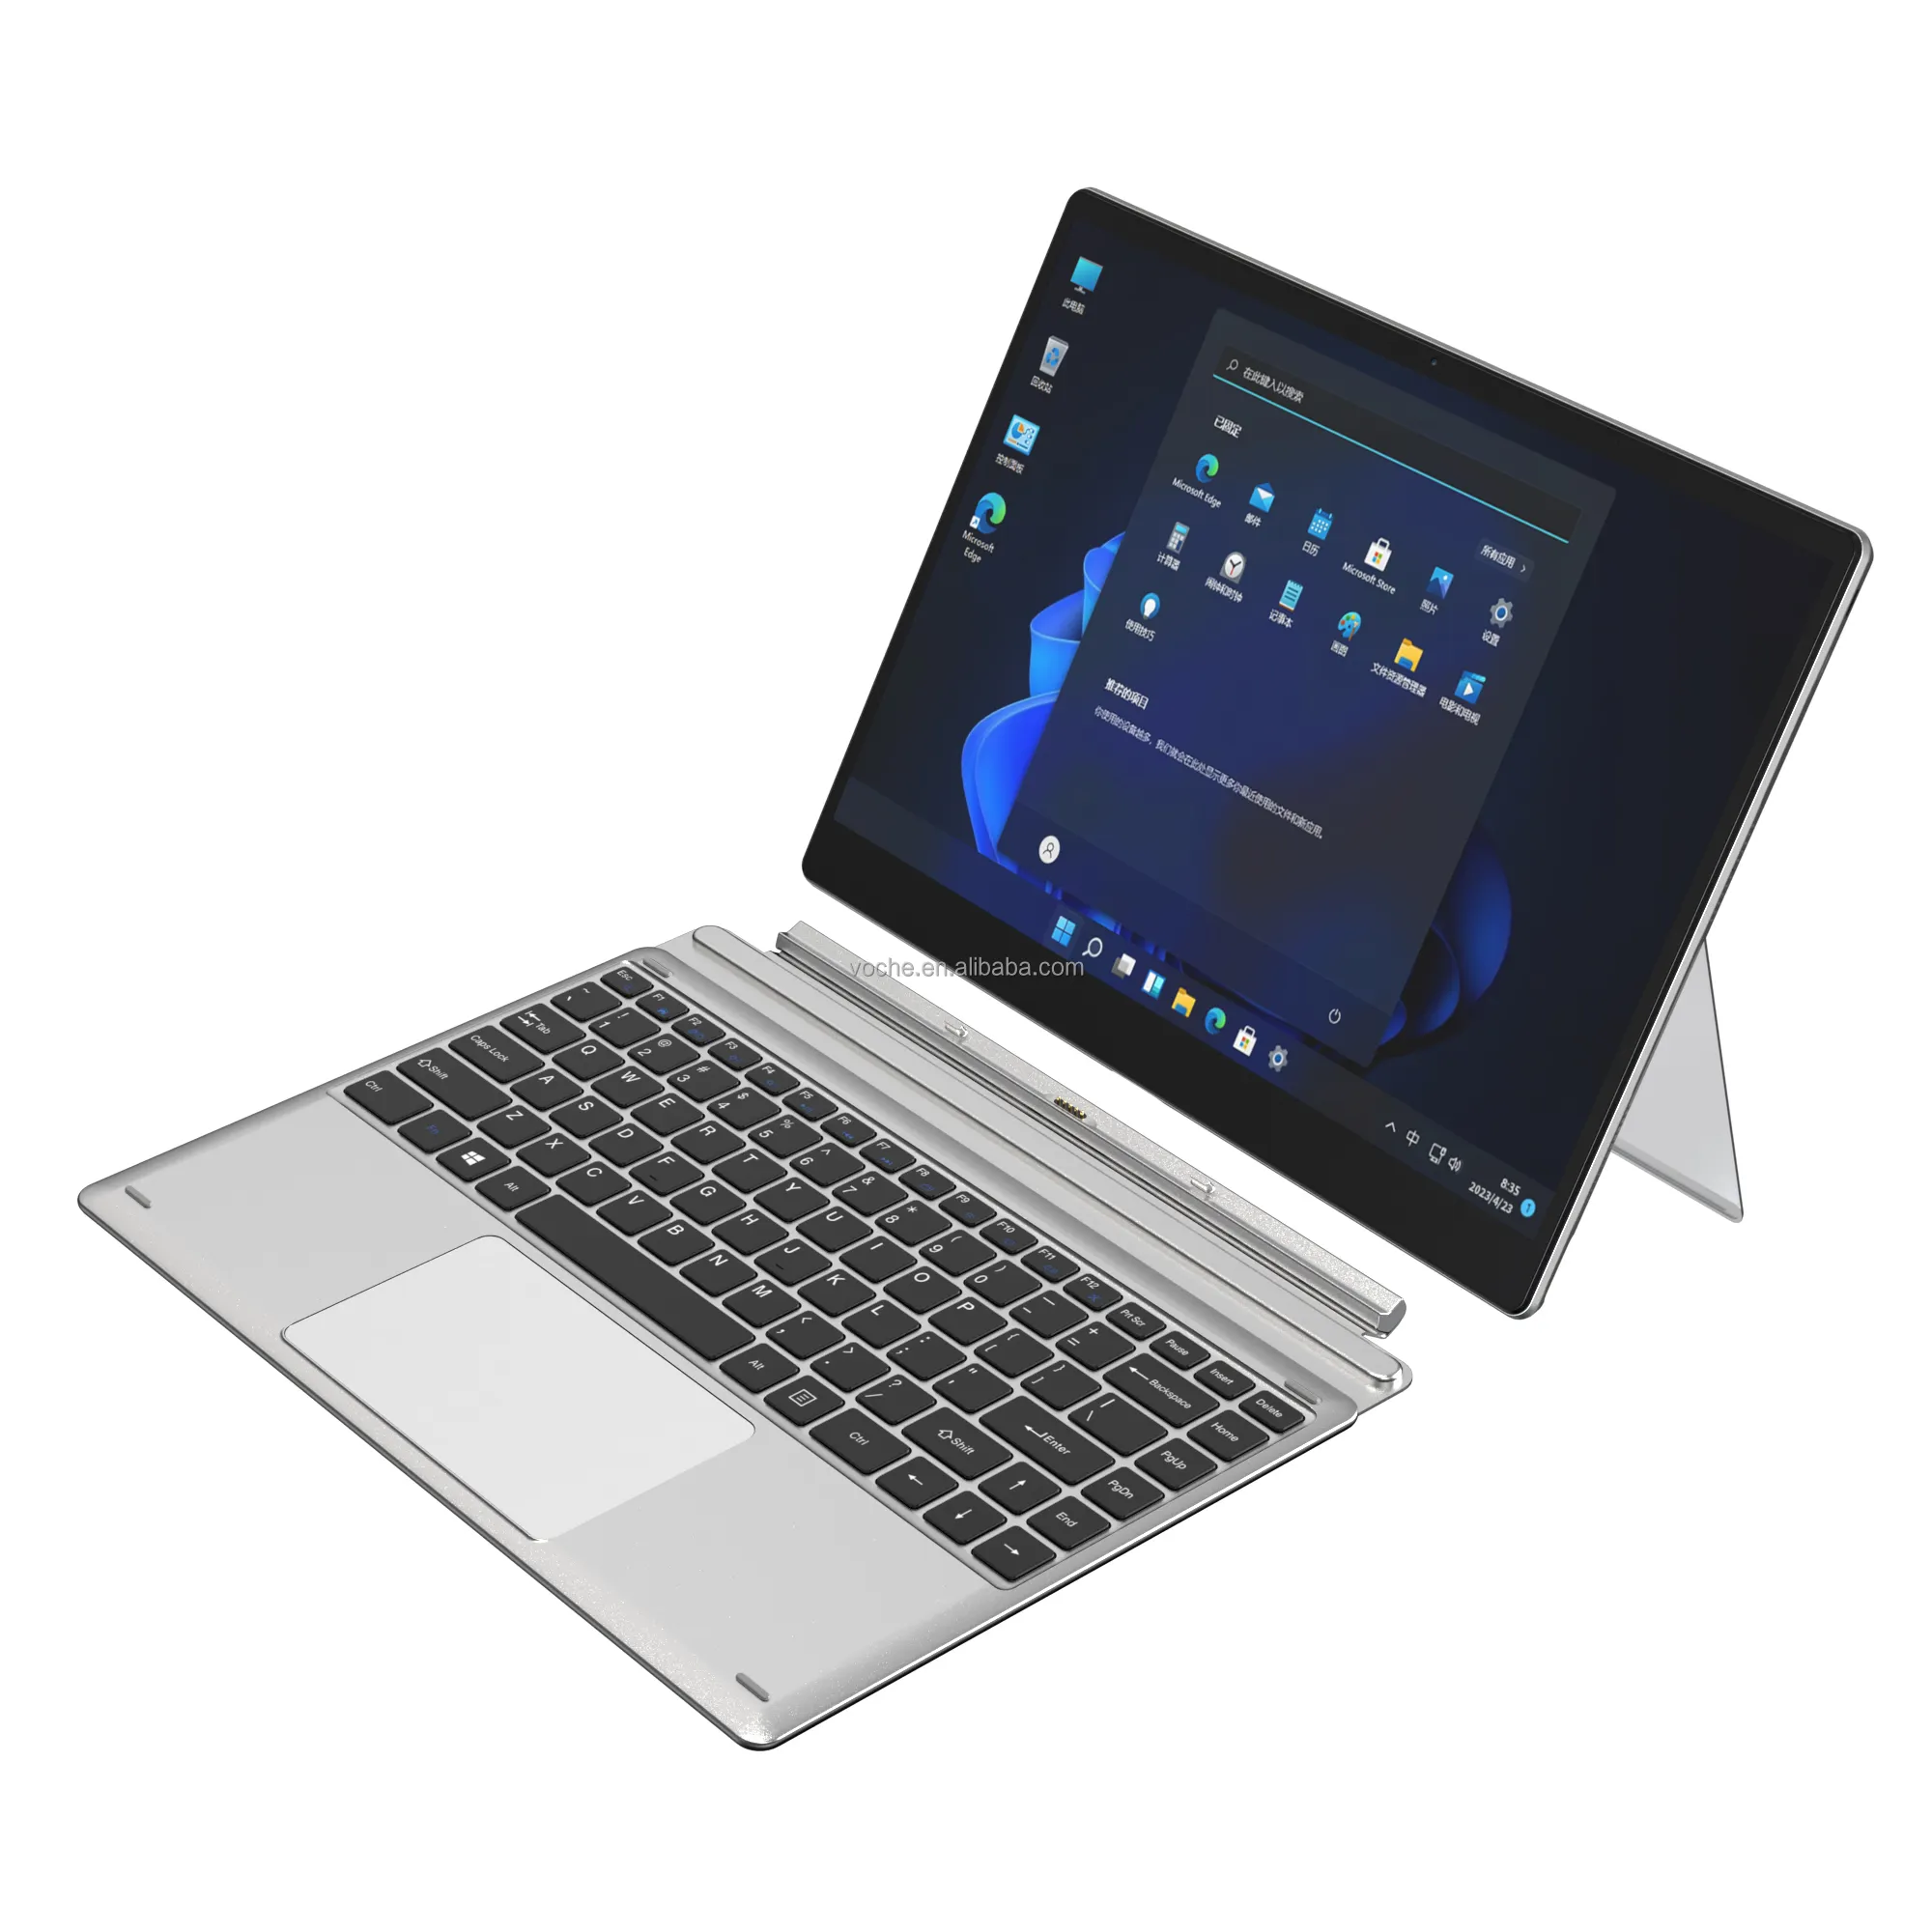 Nova Fábrica de Design Atacado Laptops 12.3 polegada laptop barato i7 escritório laptop 2 in1 Tablet PC OEM/ODM em guangdong China